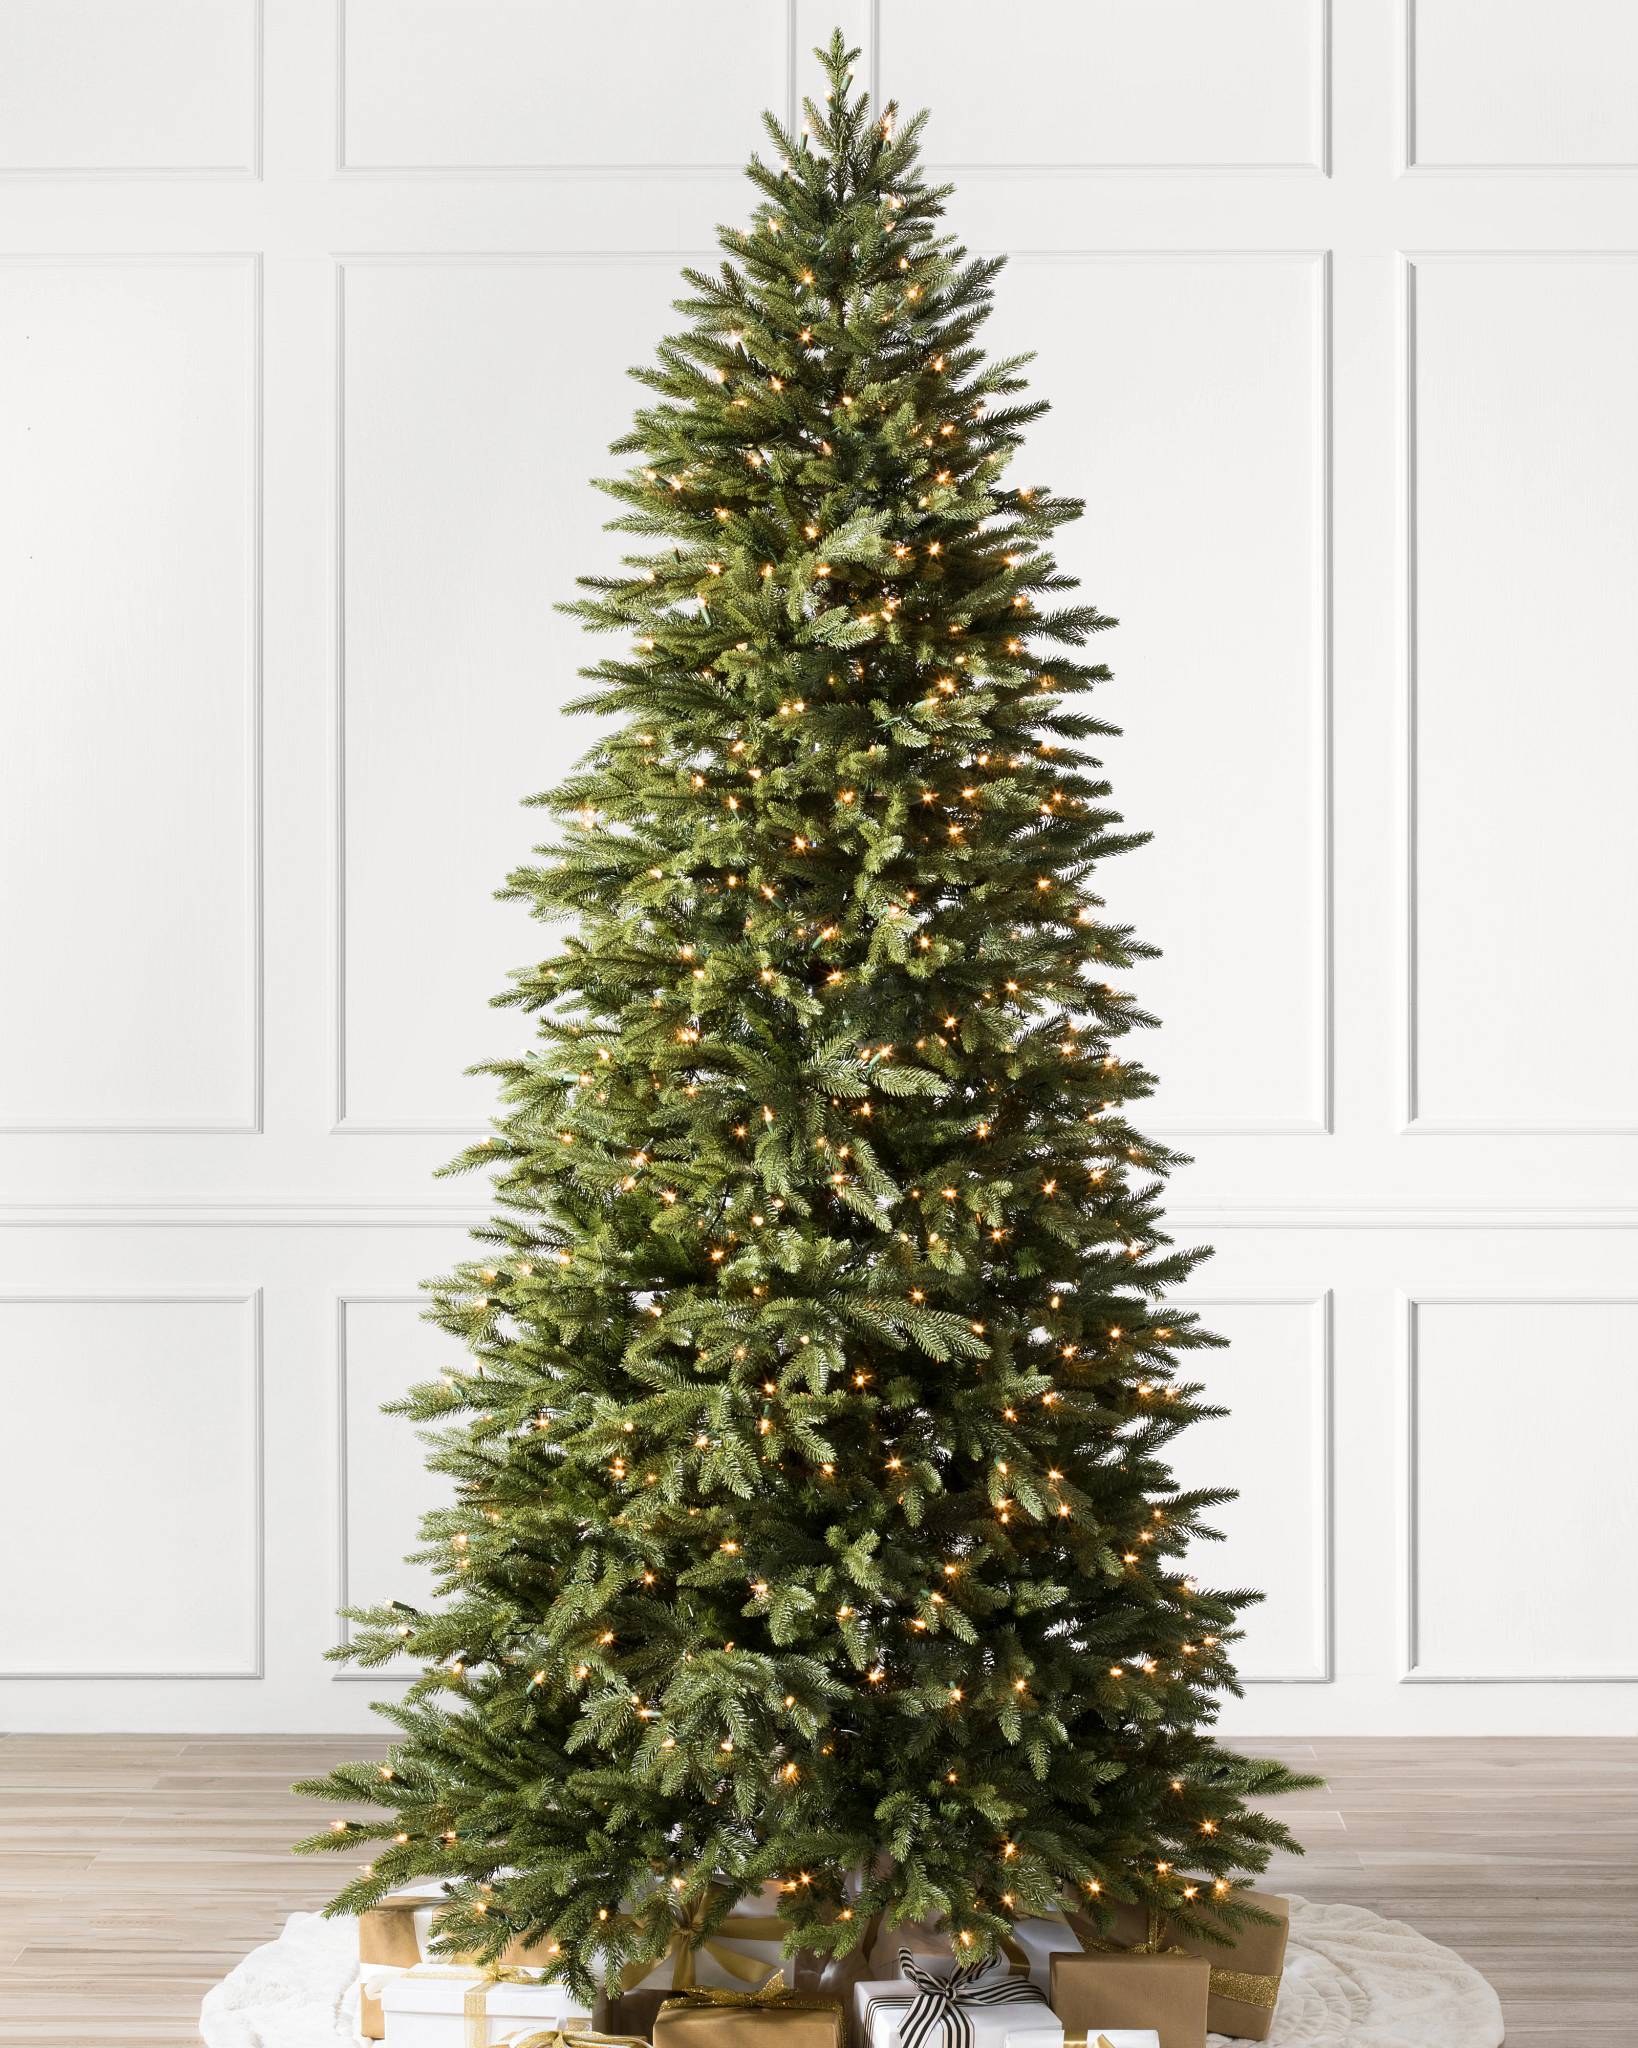 Skinny Christmas Trees With Lights